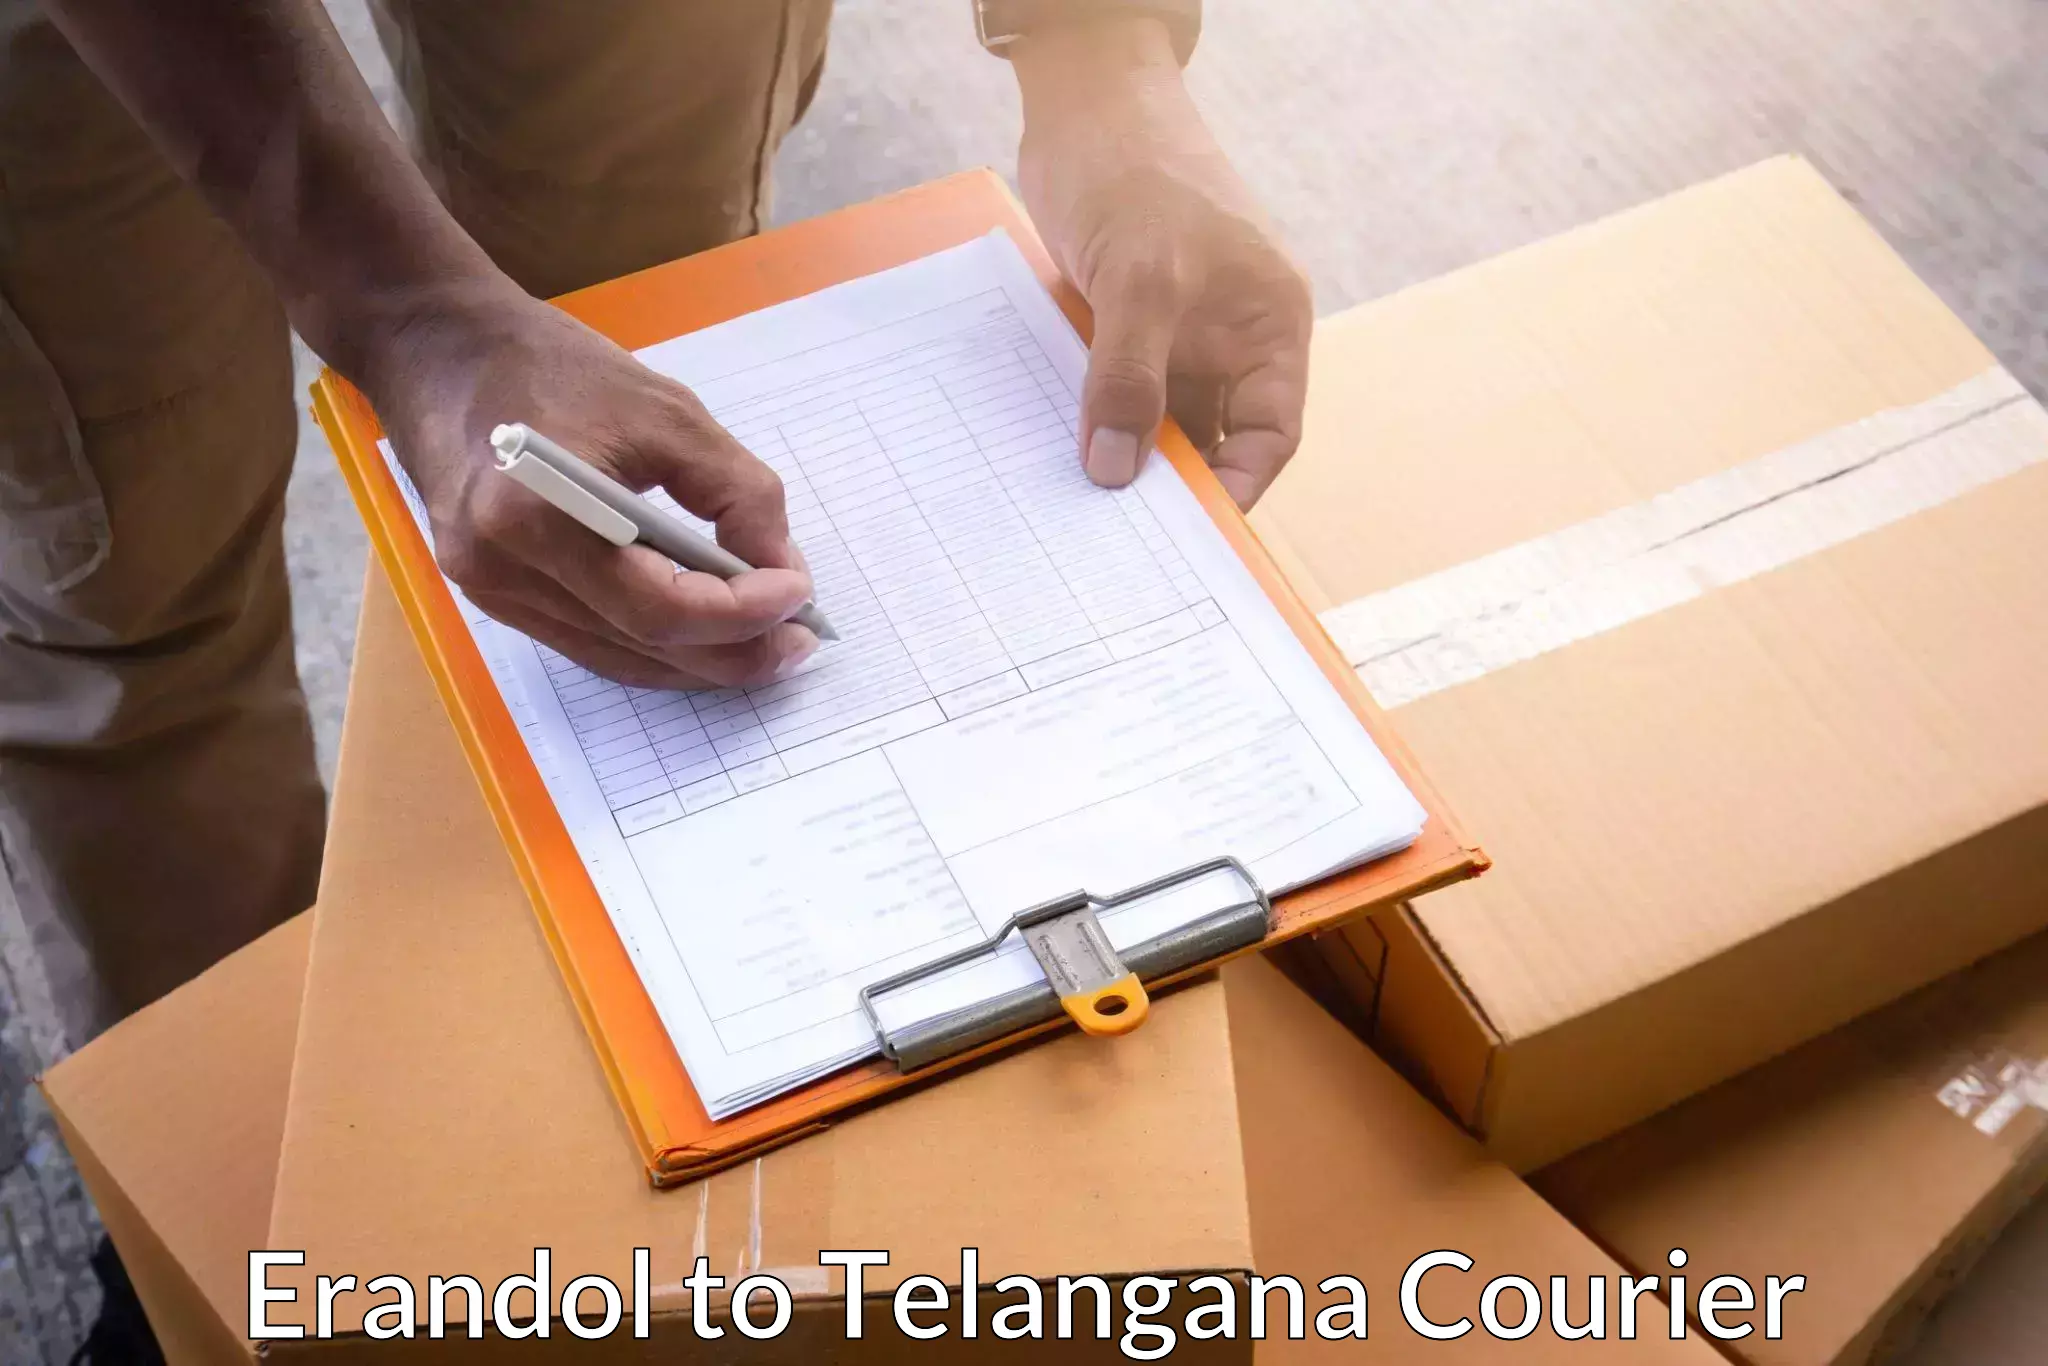 High-capacity parcel service Erandol to Madnoor